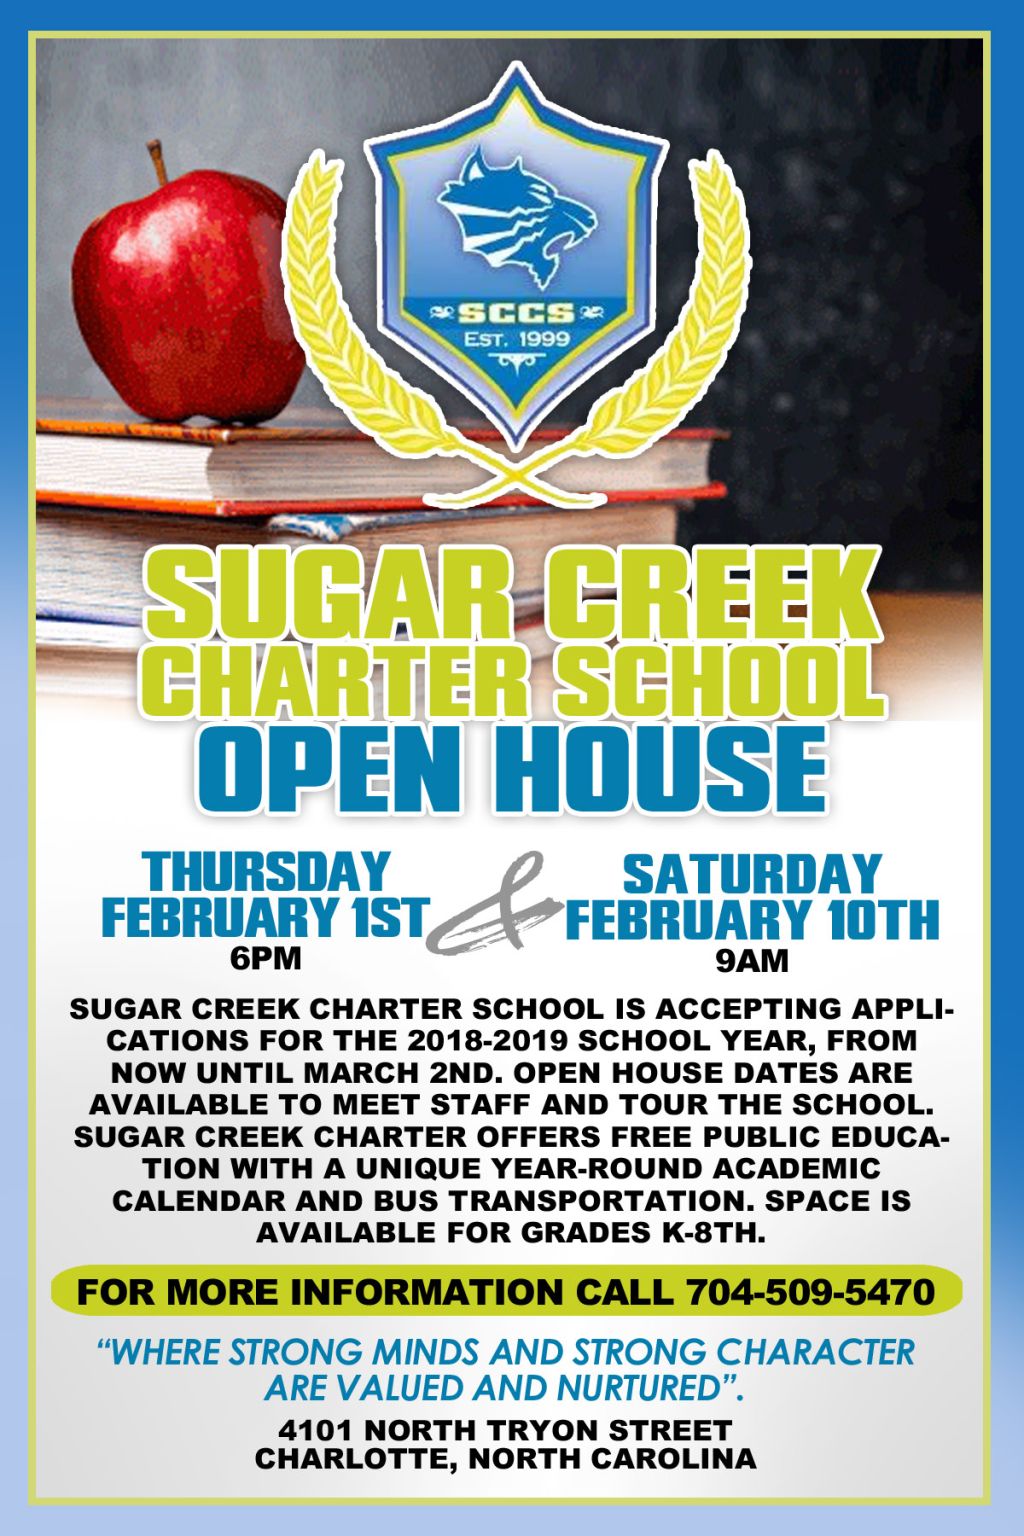 sugar-creek-charter-school-open-house-feb-1st-feb-10th-105-3-rnb